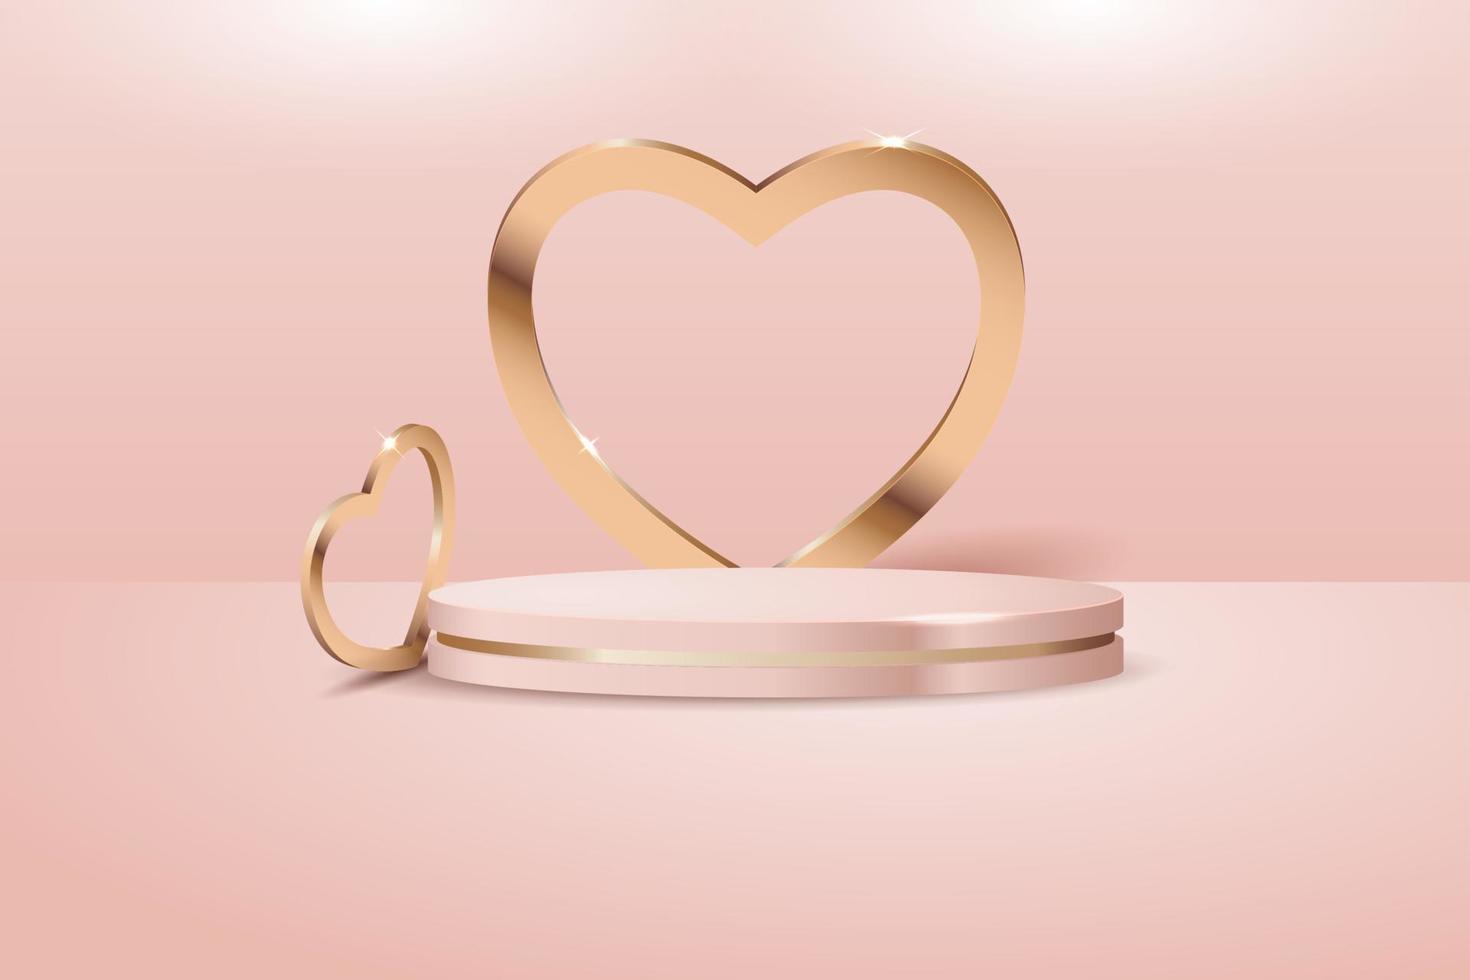 escenario dorado de podio pastel rosa dorado de lujo 3d realista sobre fondo rosa con elemento de corazón dorado 3d. vector